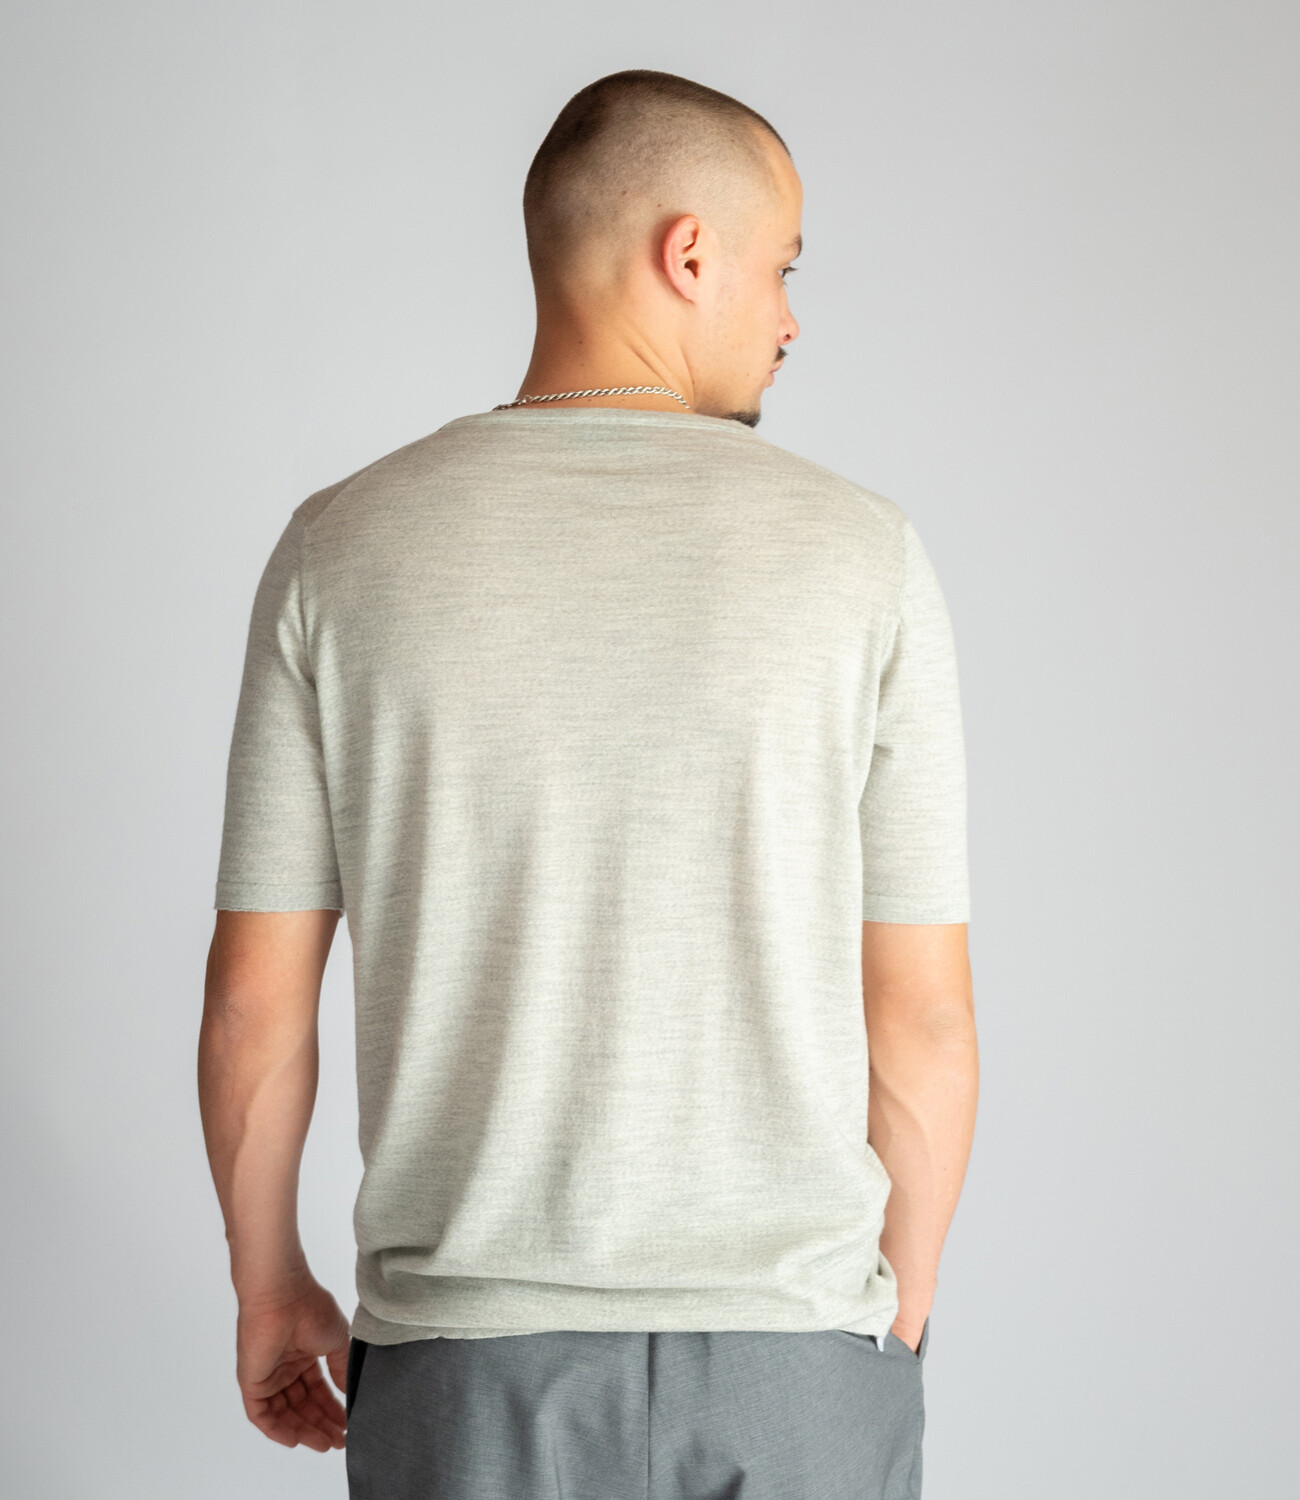 Super fine 100% merino wool Tee shirt - Grey